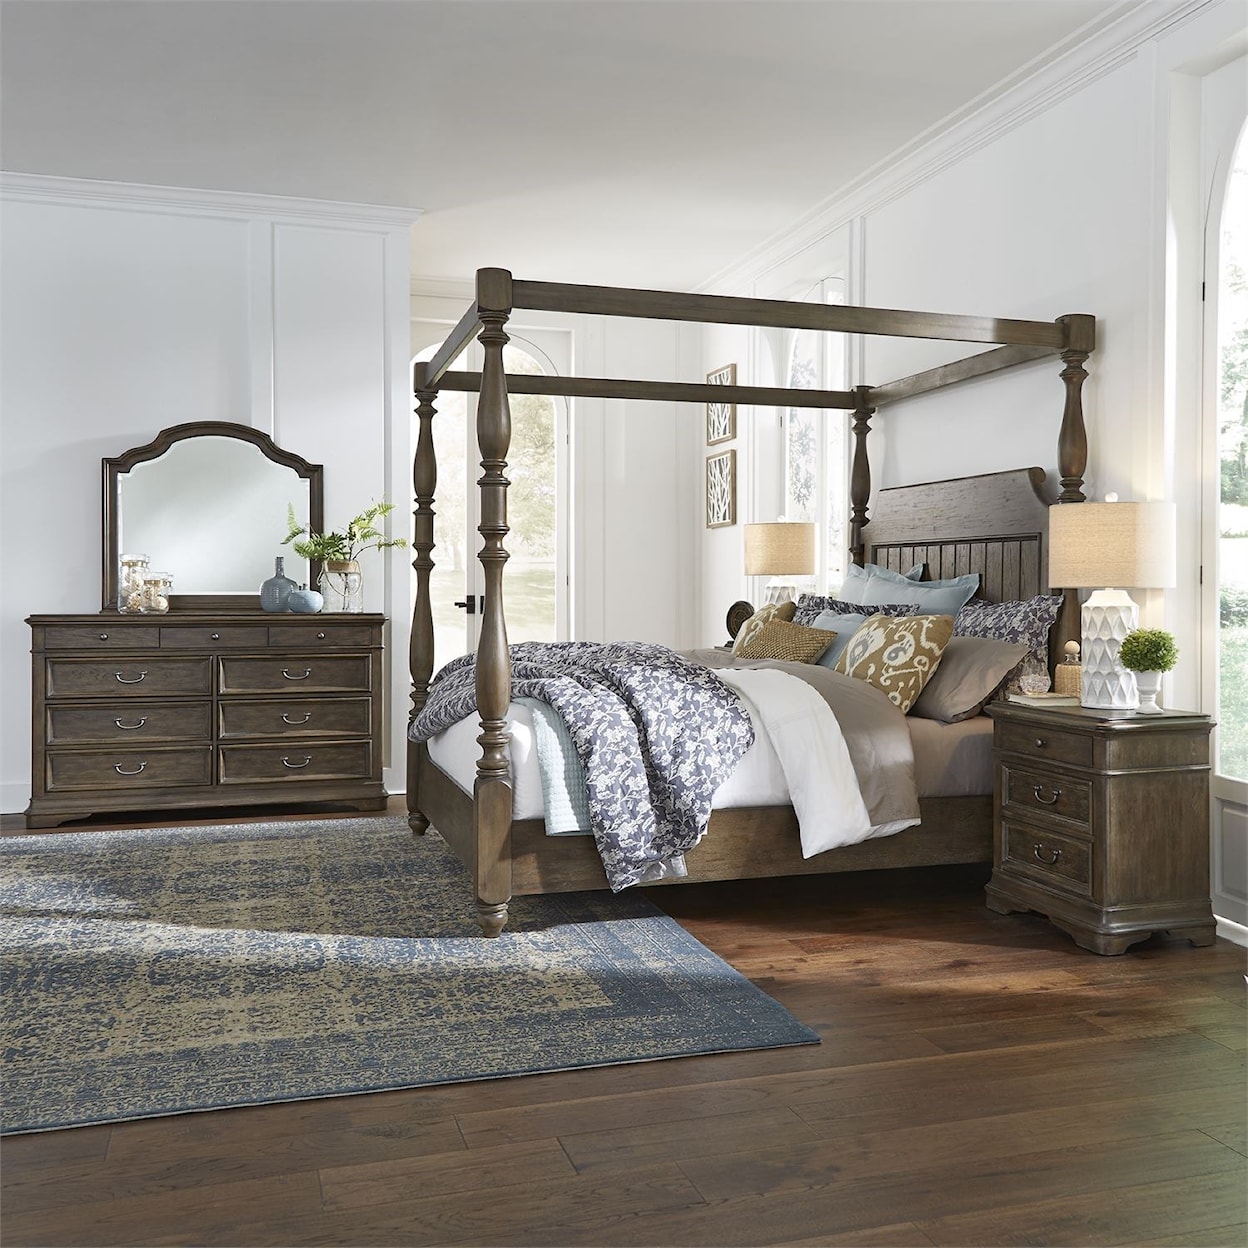 Liberty Furniture Homestead Queen Bed, Dresser, 2 Nightstands and 70" TV